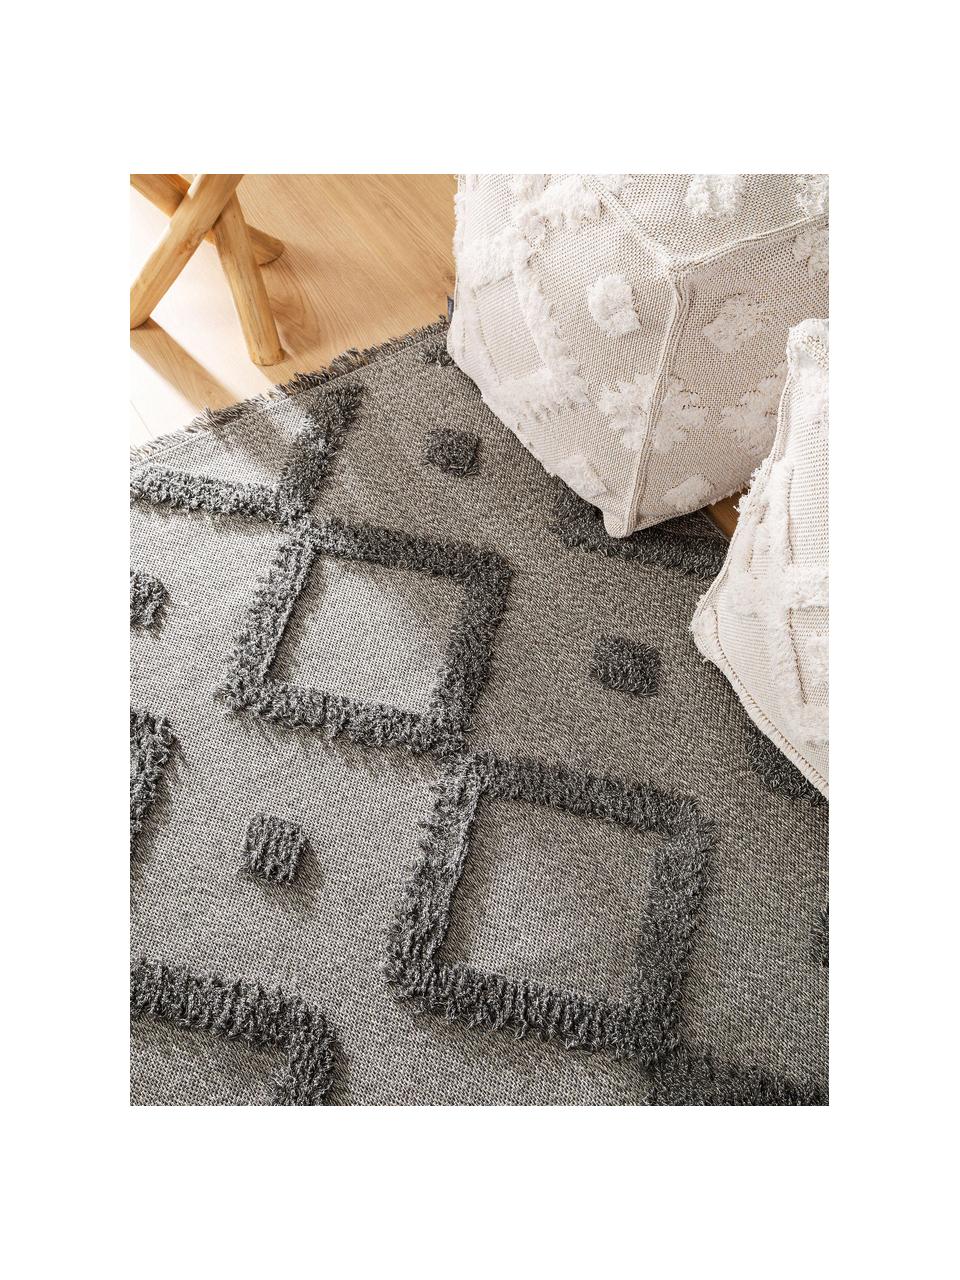 Dywan z bawełny z frędzlami Oslo, 100% bawełna, Szary, melanżowy, S 150 x D 230 cm (Rozmiar M)